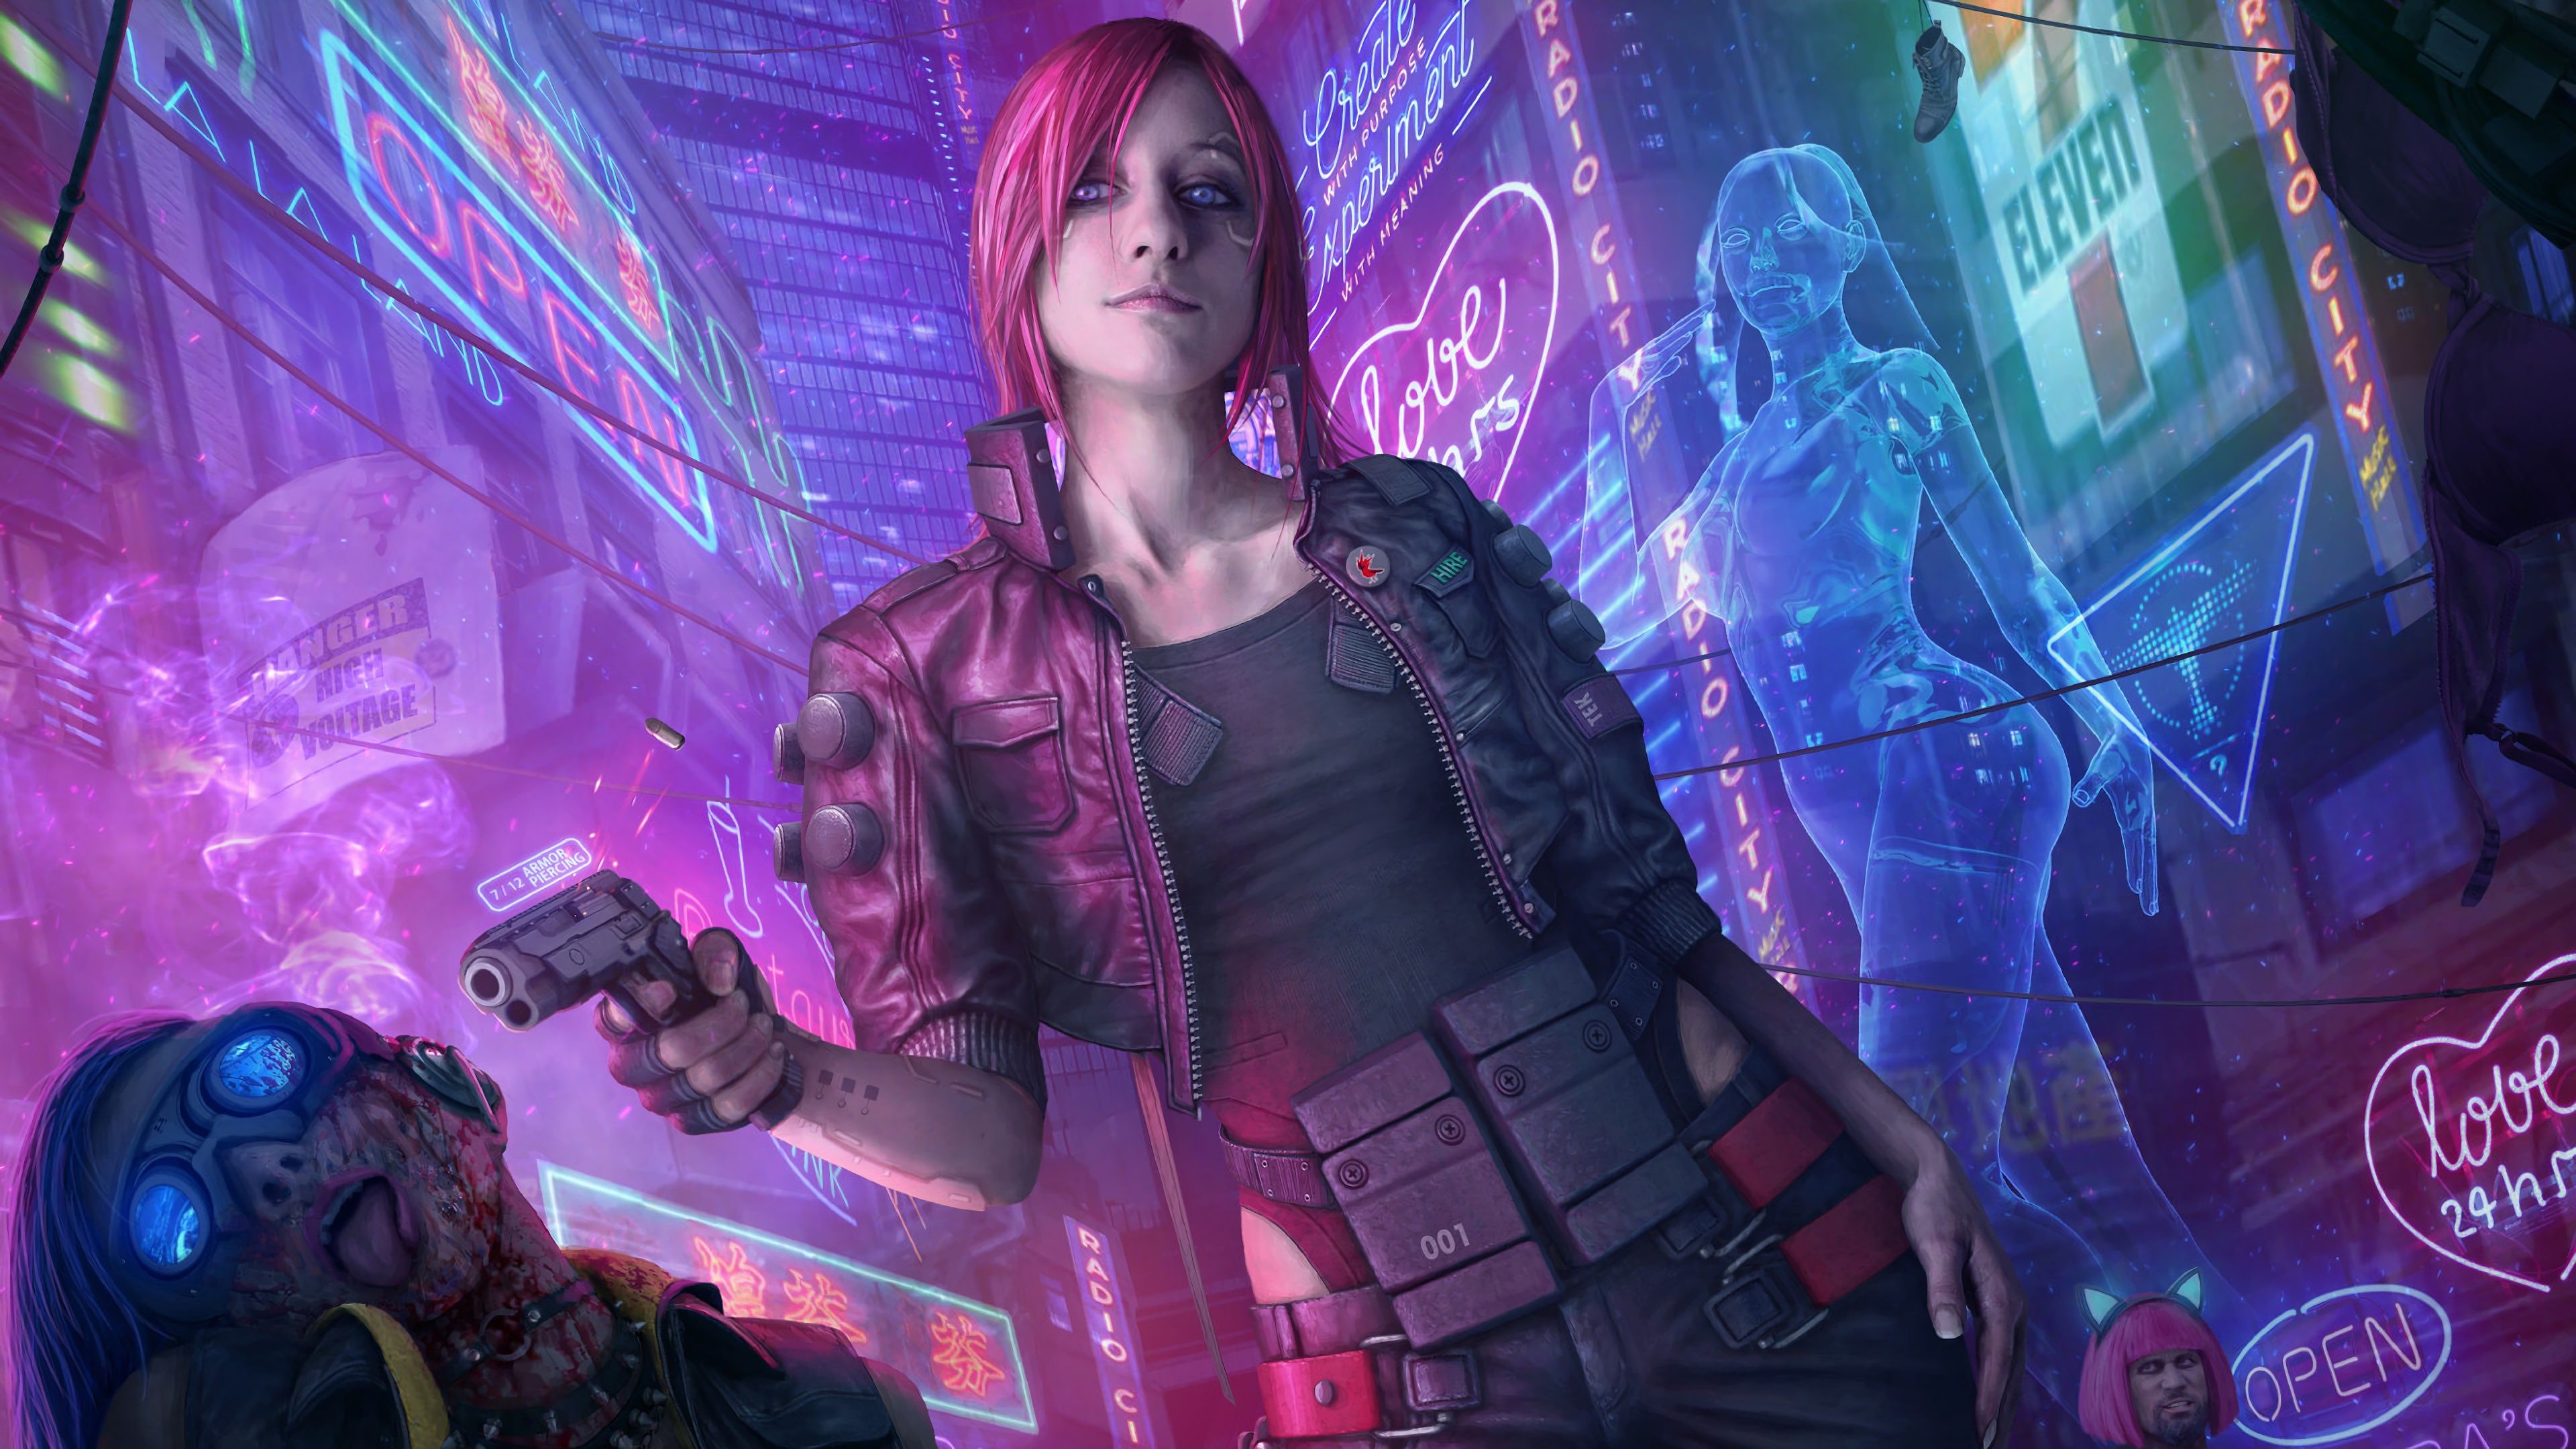 HD wallpaper: game character wallpaper, cyberpunk, Cyberpunk 2077, V ( Cyberpunk 2077)